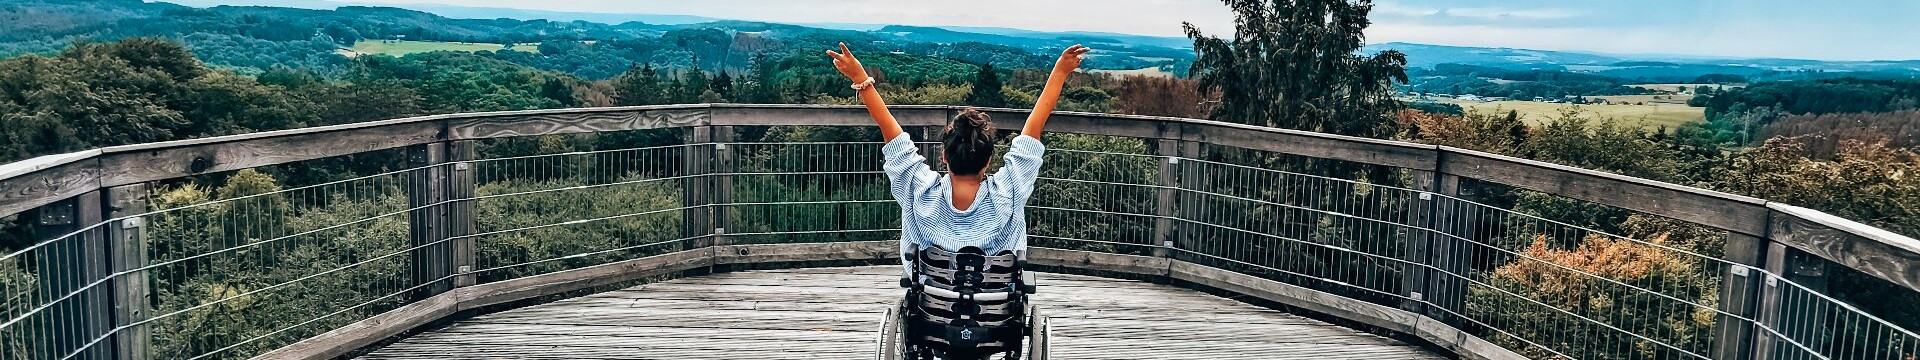 Eine Rollstuhlfahrerin schaut von der Aussichtsplattform des Baumwipfelpfads Panabora auf die grünen Hügel im Bergischen Land und recht die Arme in die Höhe.  © wheeliewanderlust